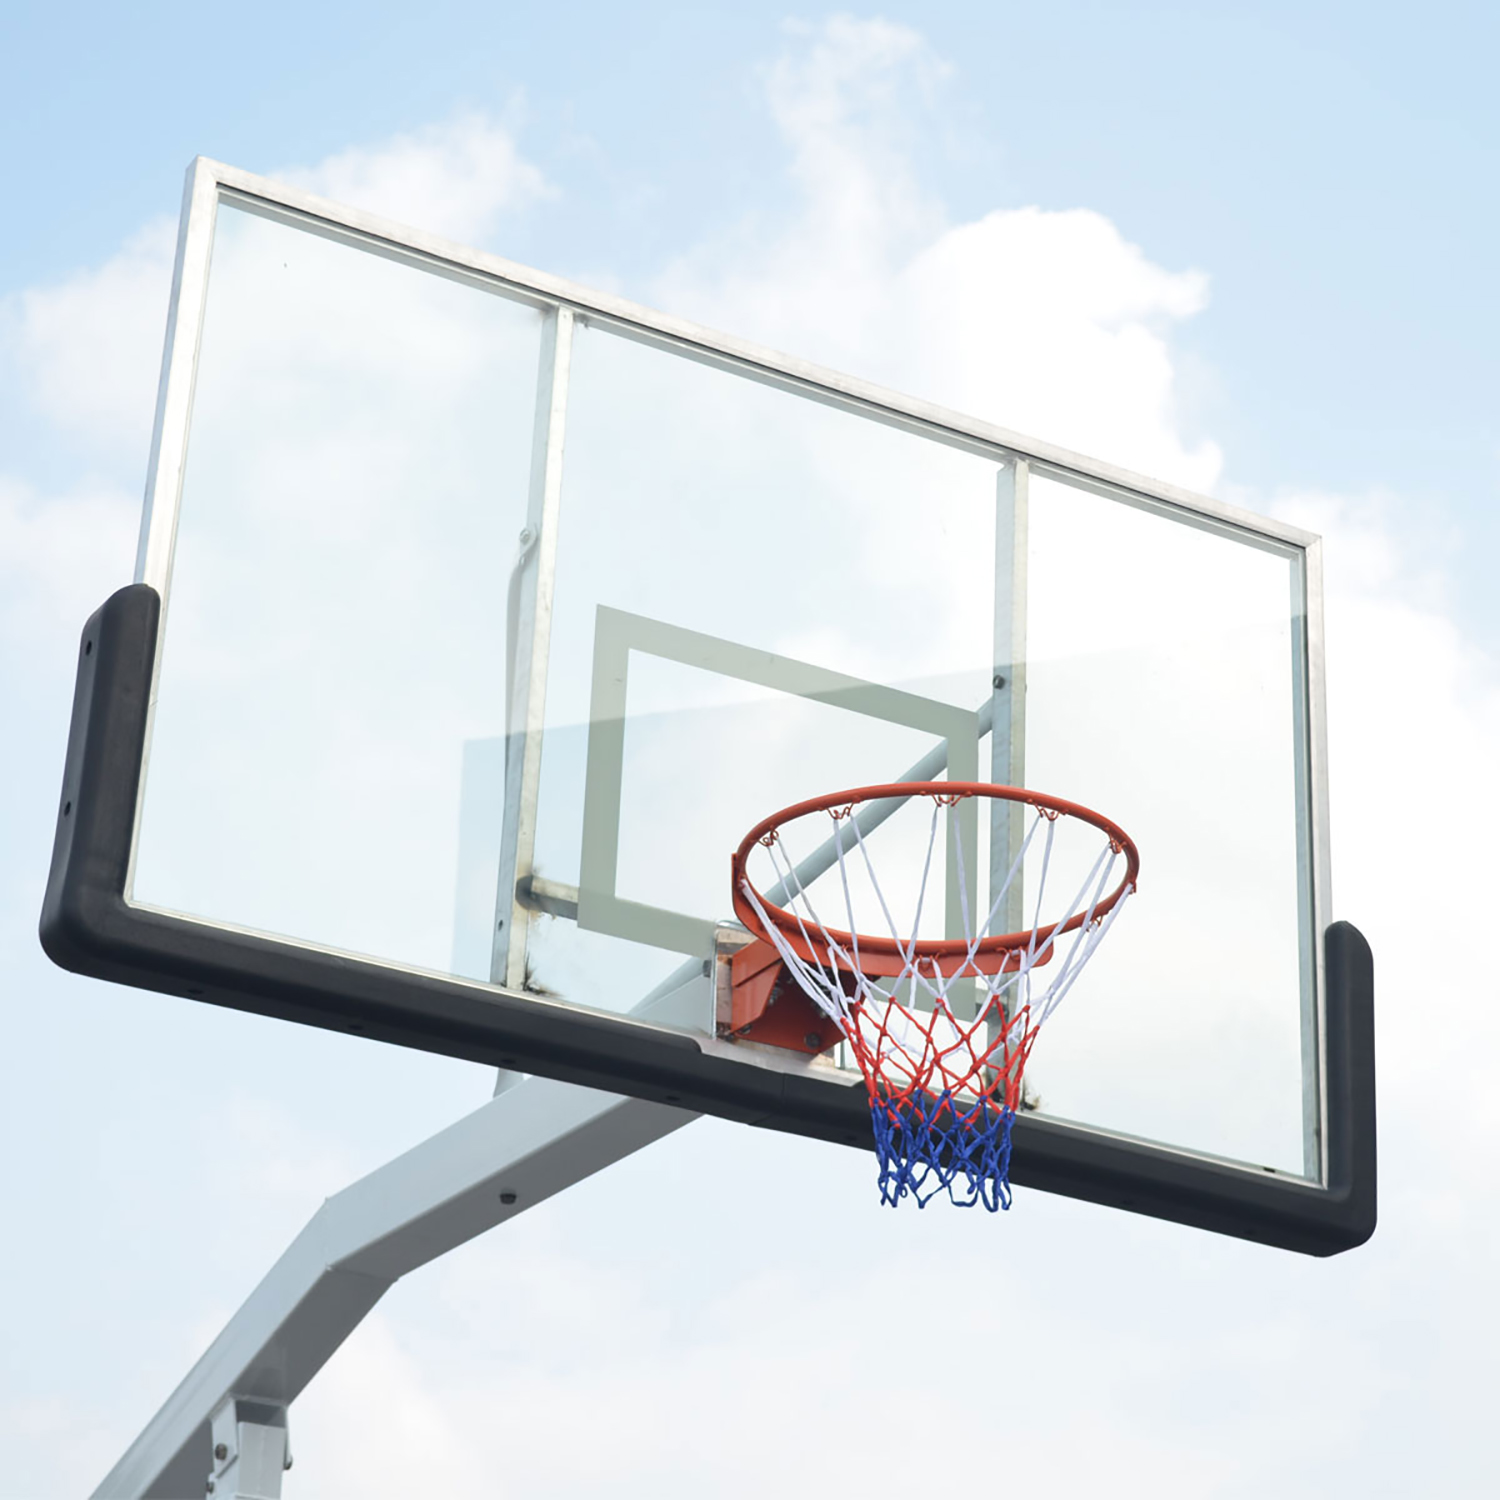 Мобильная баскетбольная стойка клубного уровня DFC STAND72G. Фото N5